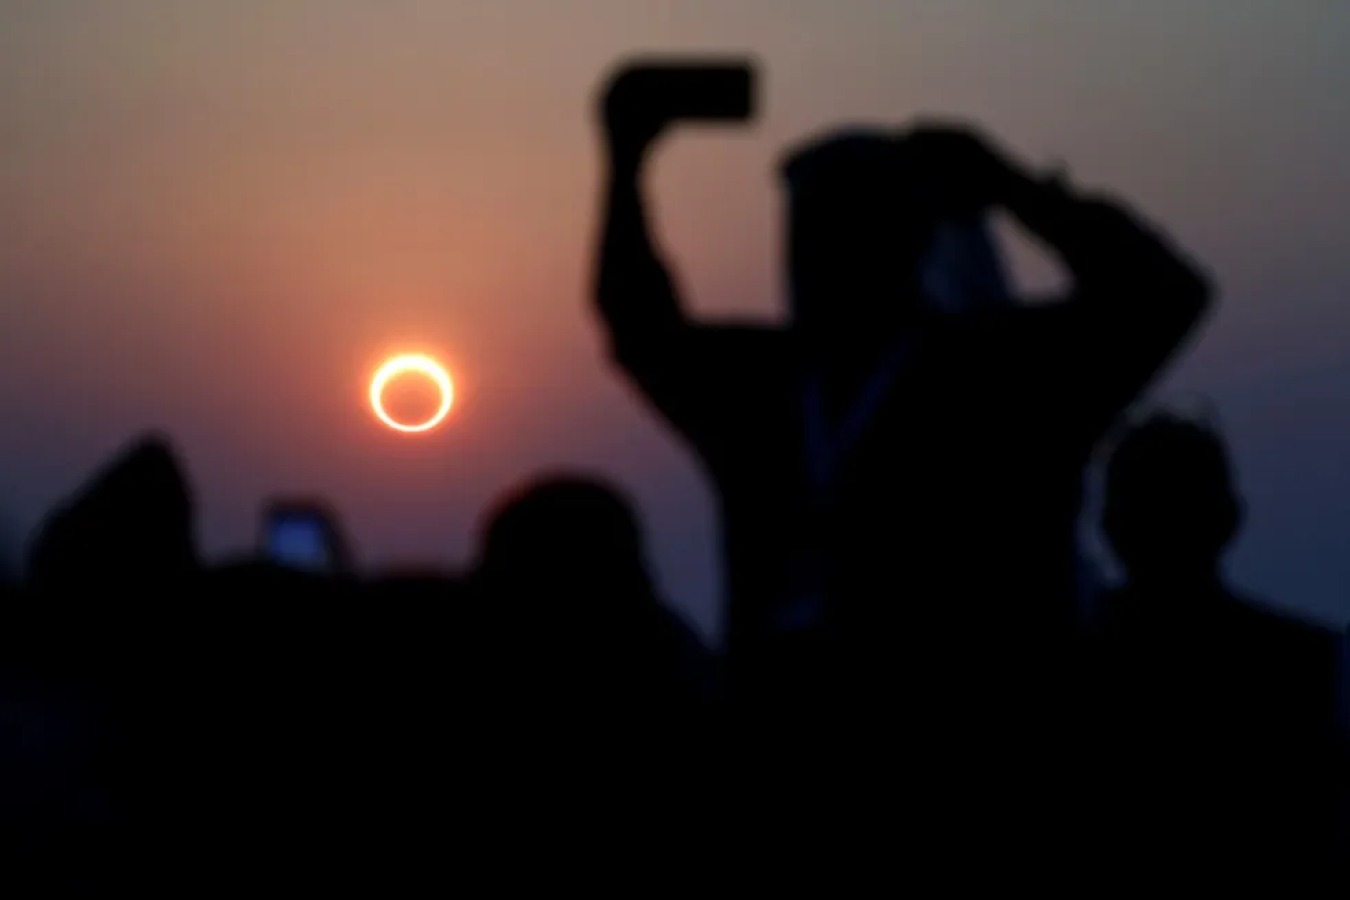 Eclipse solar anular: confira dicas para observar o fenômeno sem prejudicar a visão